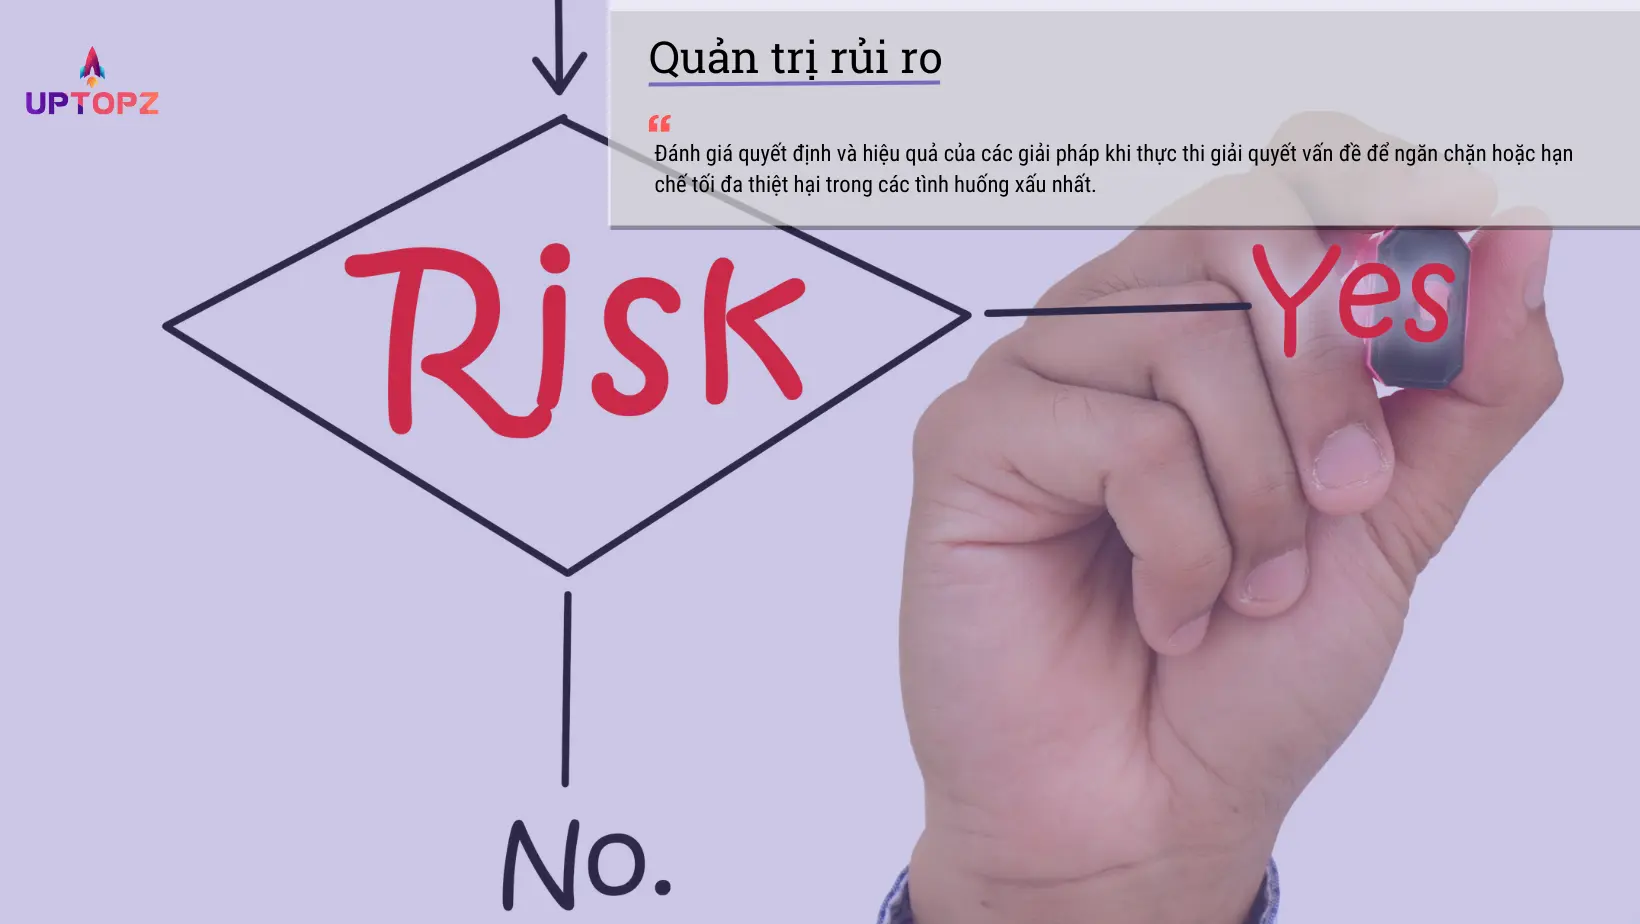 Quản trị rủi ro để hạn chế tổn thất có thể xảy ra khi giải quyết vấn đề